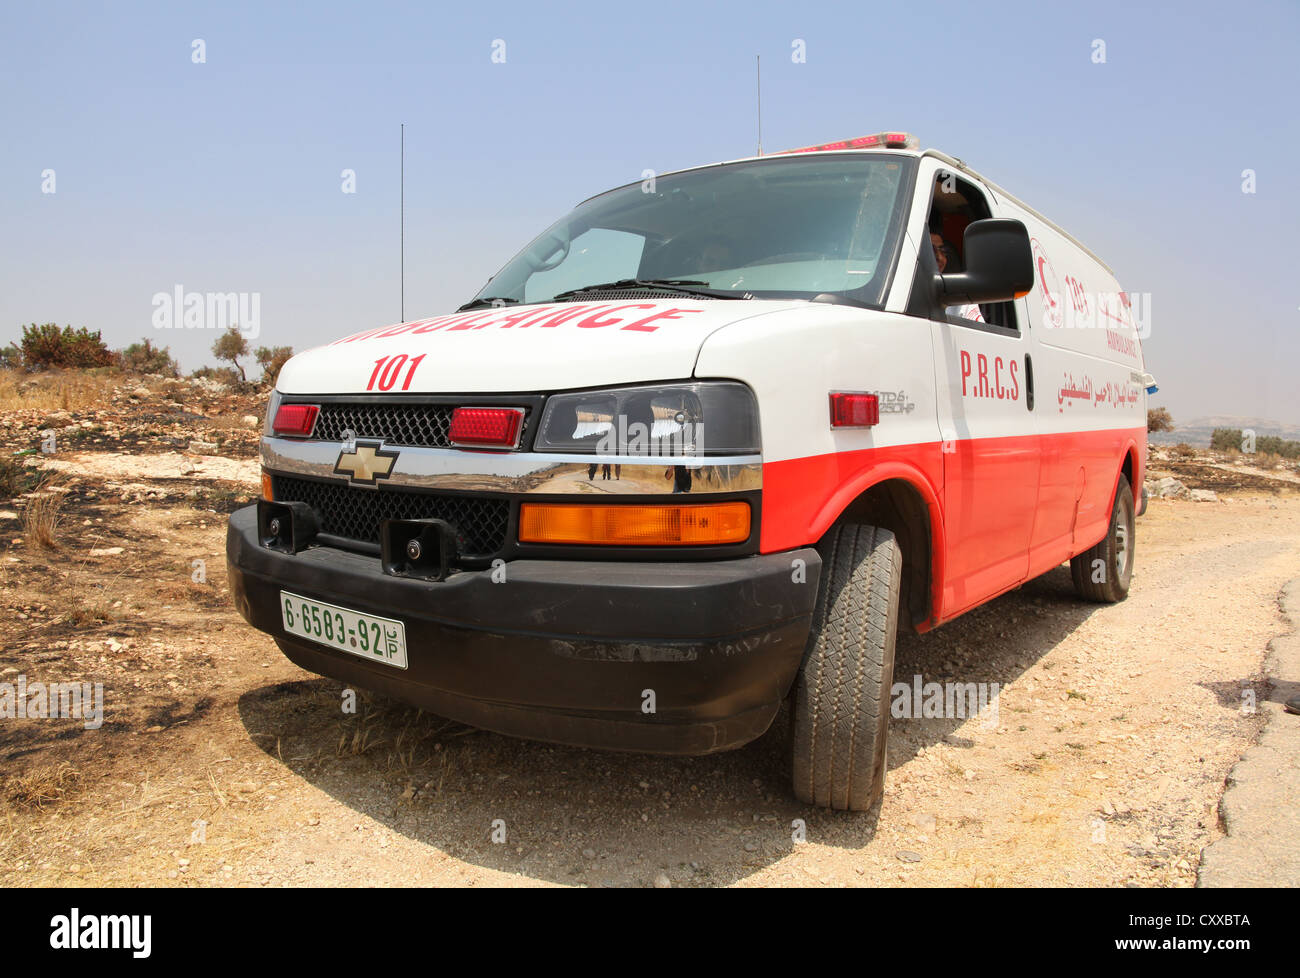 Carreras de ambulancias palestinas a una emergencia a B'lin village, Territorios Palestinos Ocupados Foto de stock